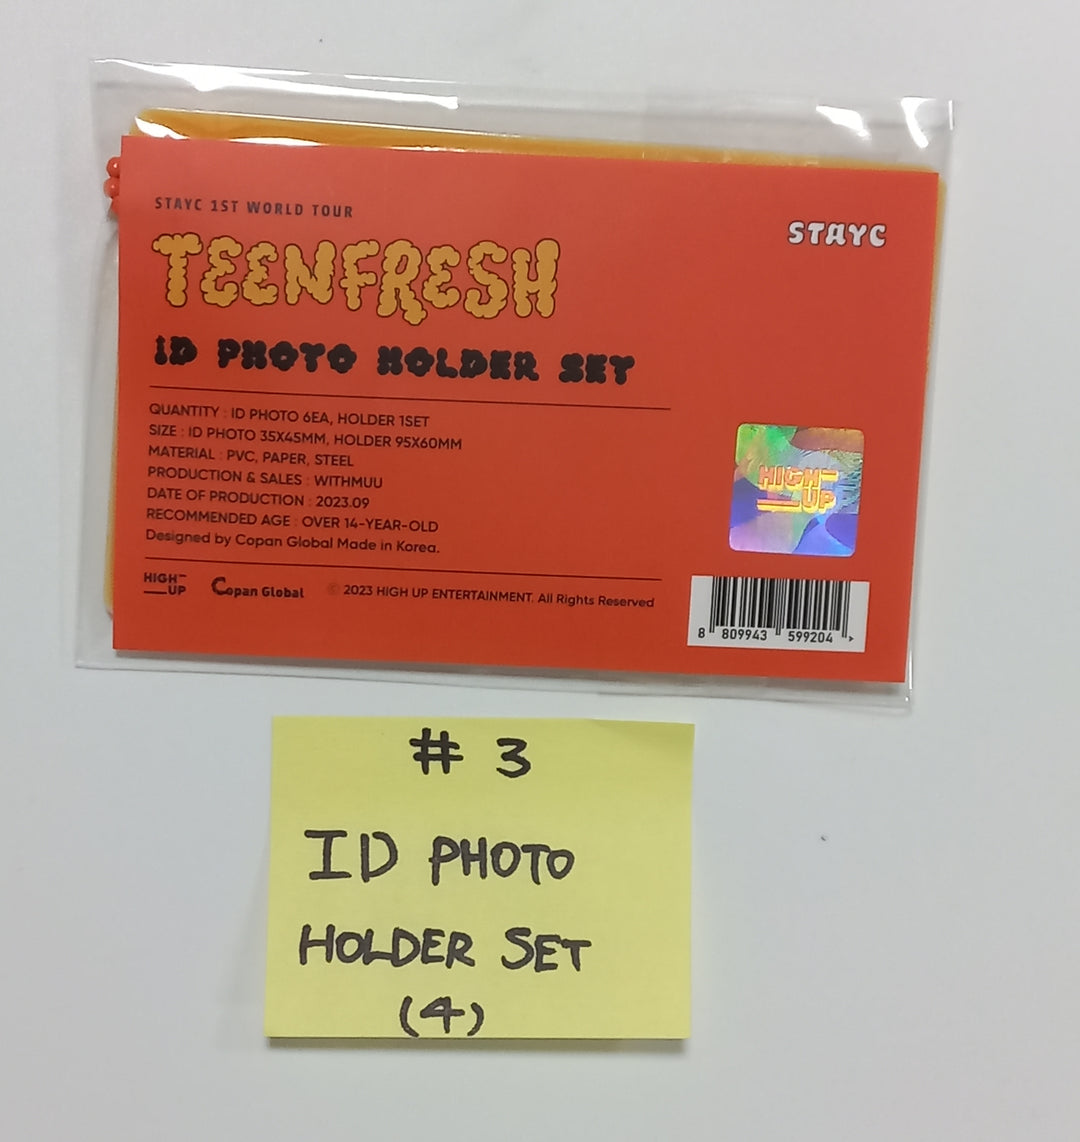 STAYC "TEENFRESH" 1st World Tour - Official MD [フォトスローガン、証明写真ホルダーセット、ミニポスターセット、ティーンフレッシュ香水、バインダーブック、Tシャツ、ジャケット、ポーチ、キーホルダー] [23.09.23] 